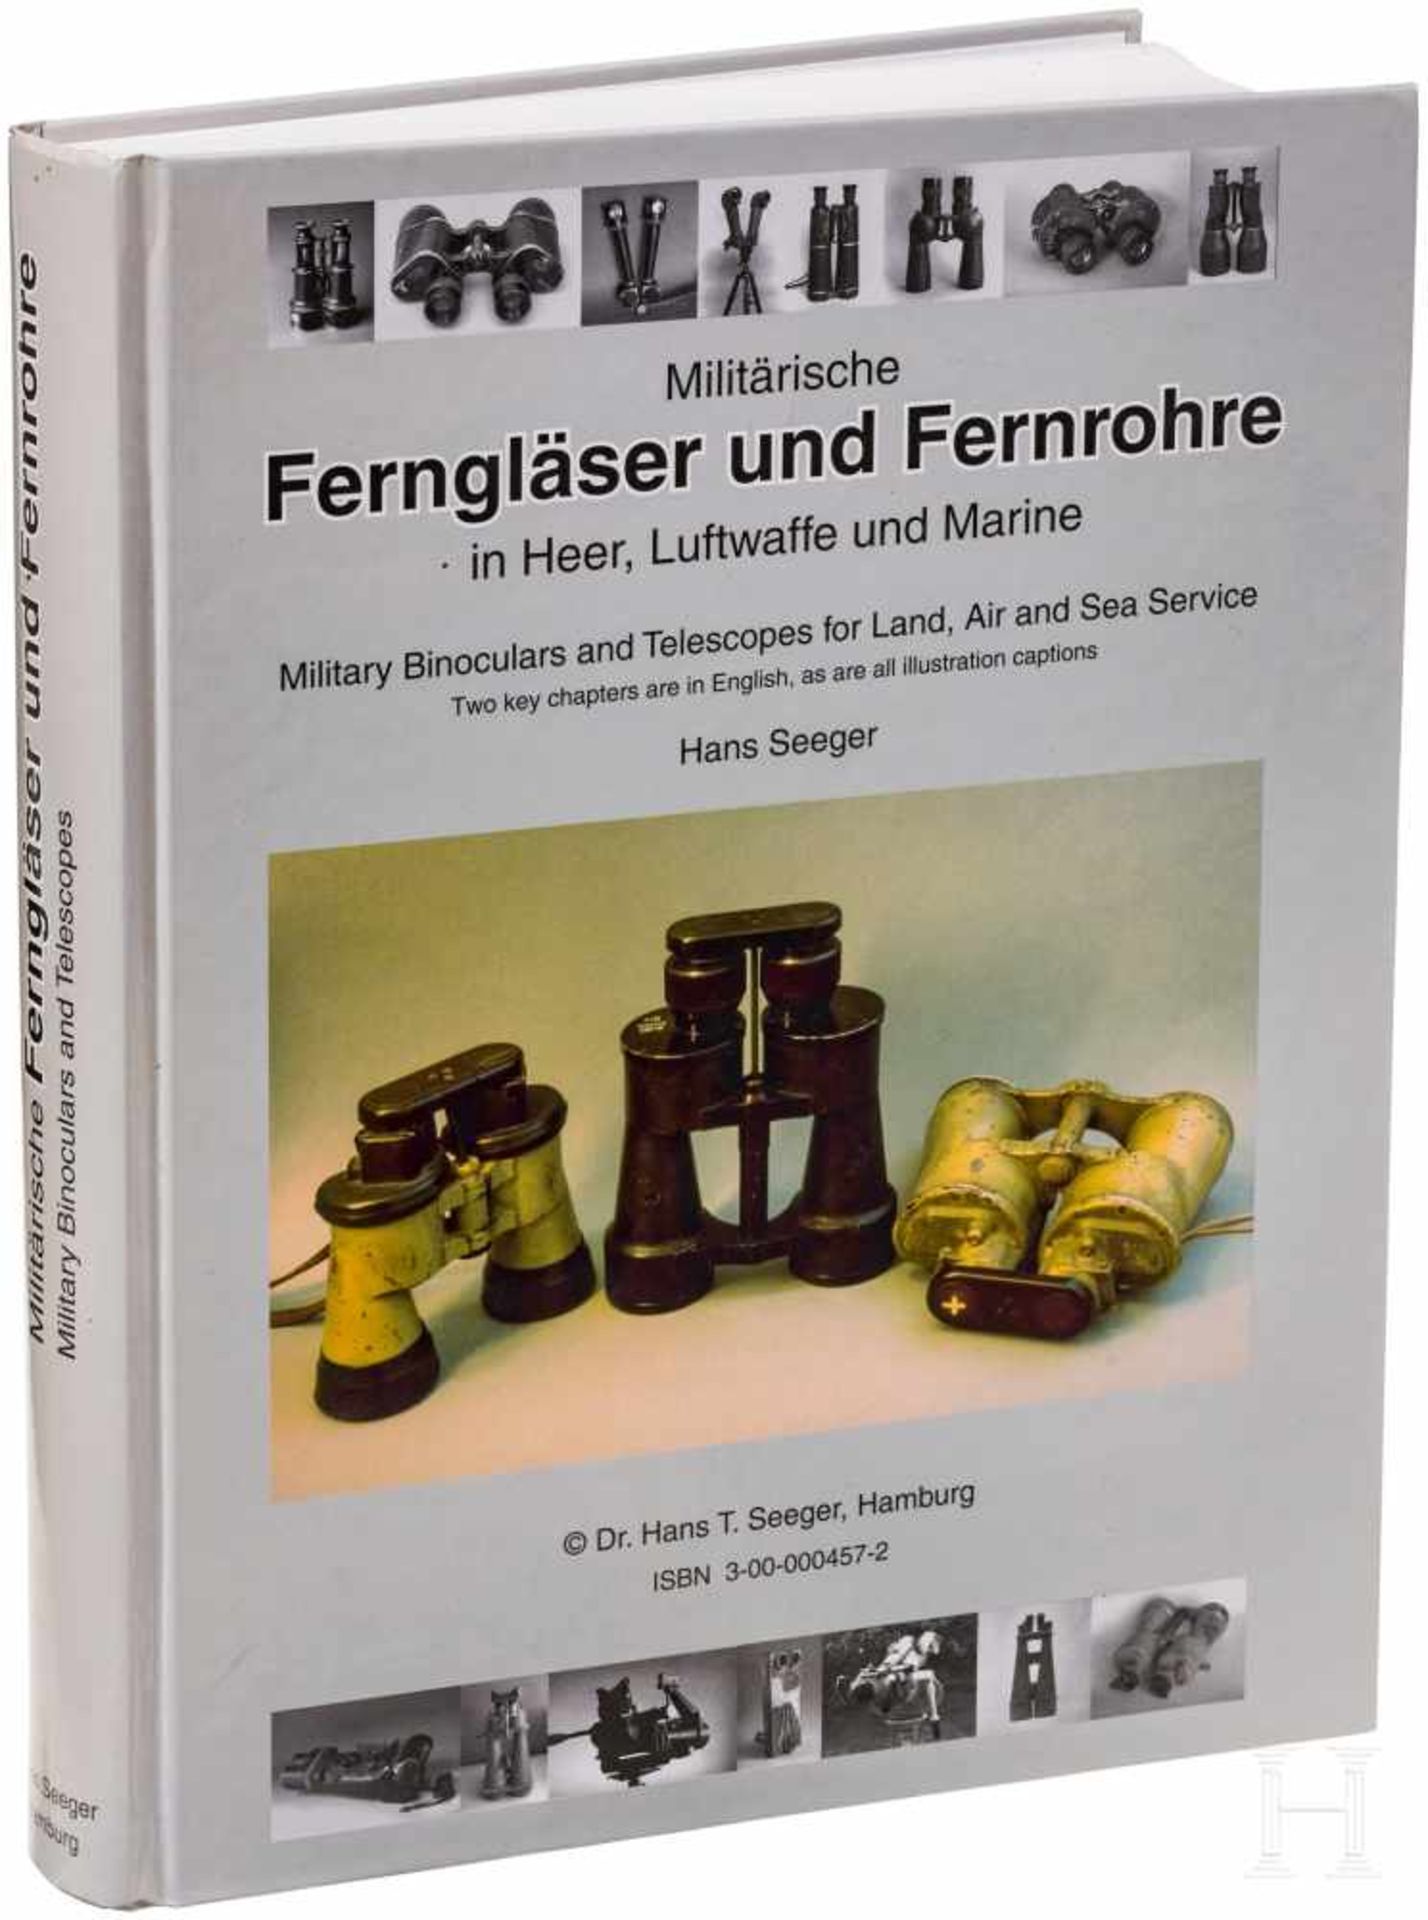 Seeger, "Militärische Ferngläser und Fernrohre"Ausgabe von 1996, 485 reich bebilderte Seiten über